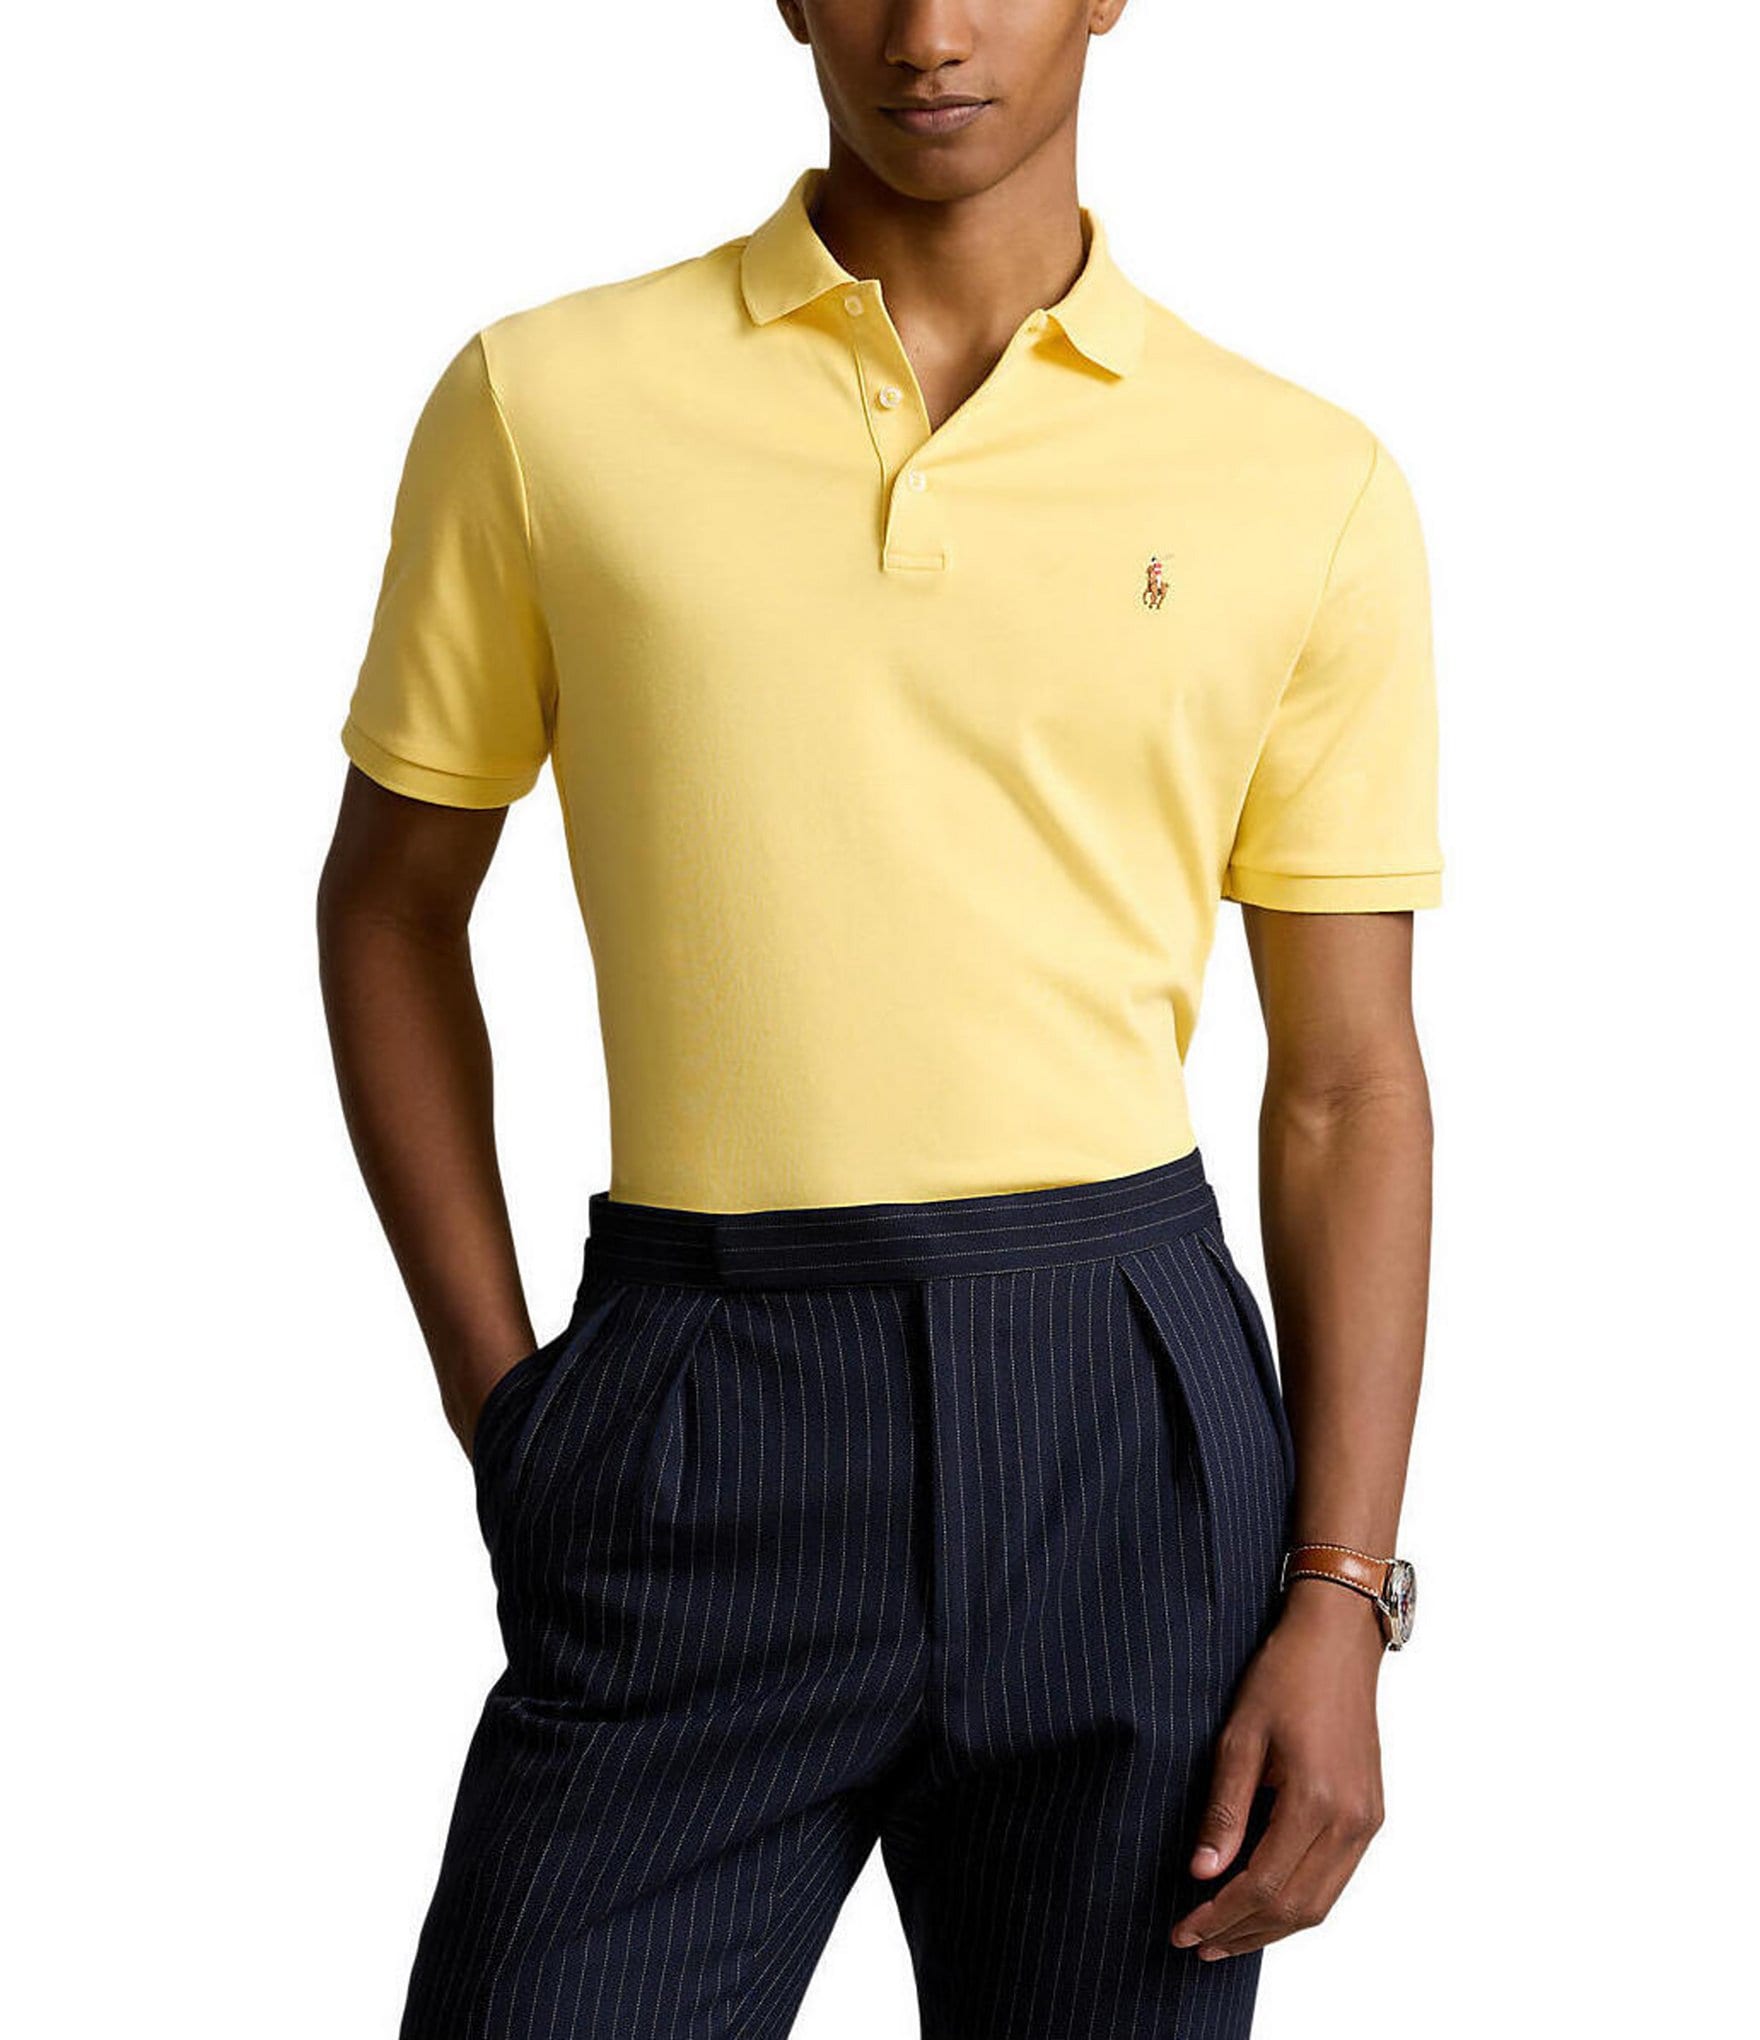 Polo Ralph Lauren Soft Cotton Polo Shirt-Black - Polos - Tops - Men